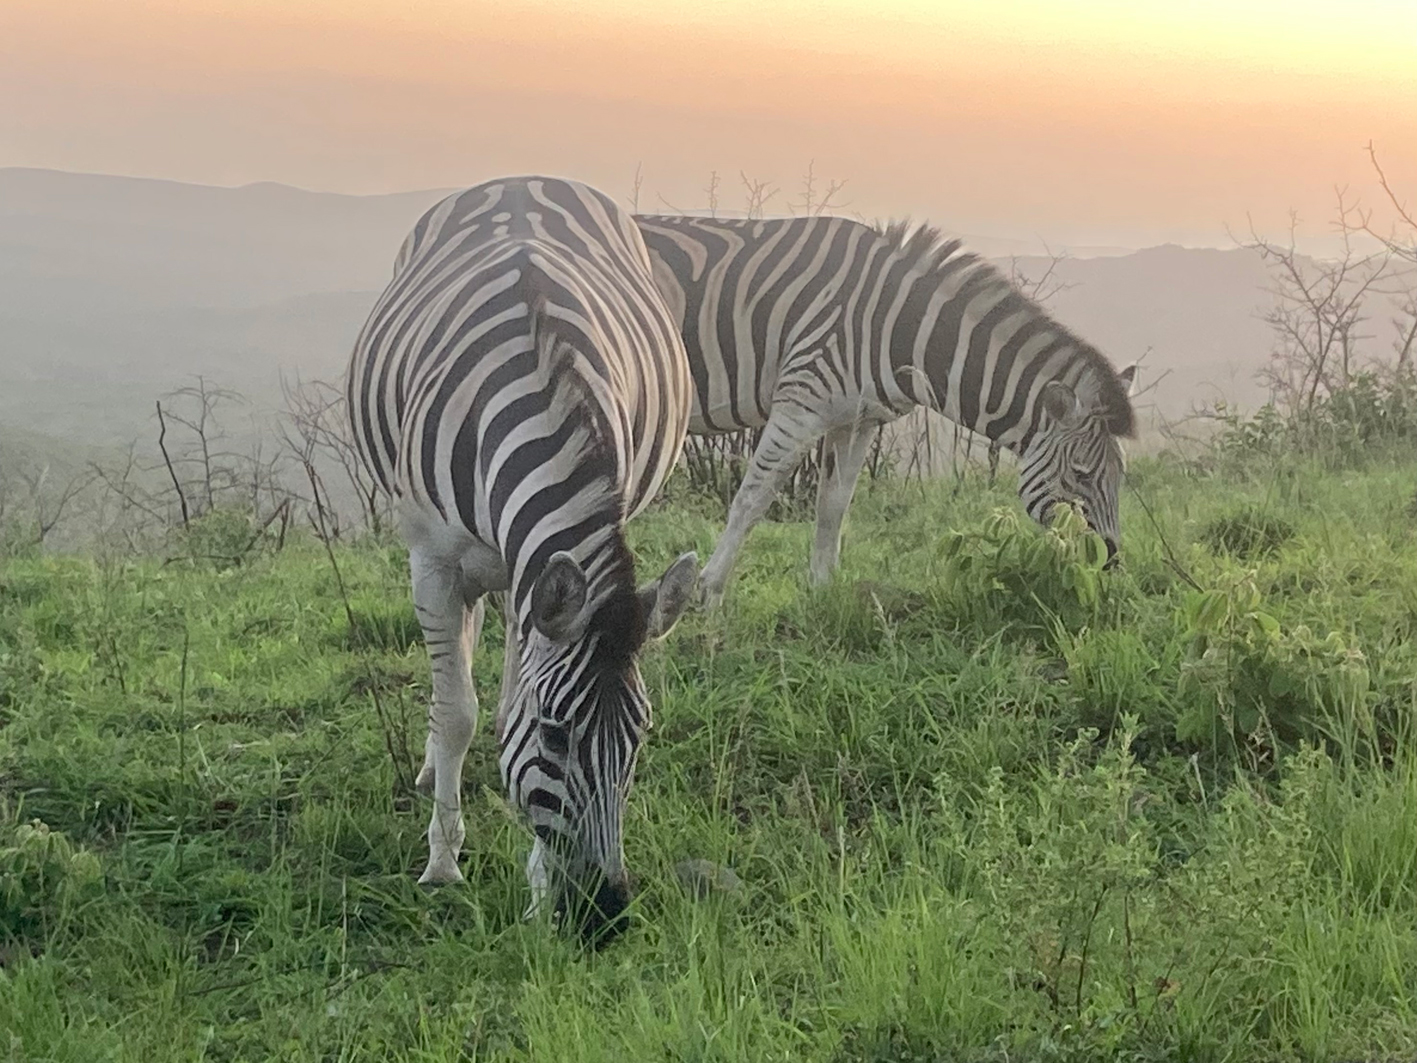 Freilebende Zebras, fotografiert im naheliegenden Nationalpark Hluhluwe.